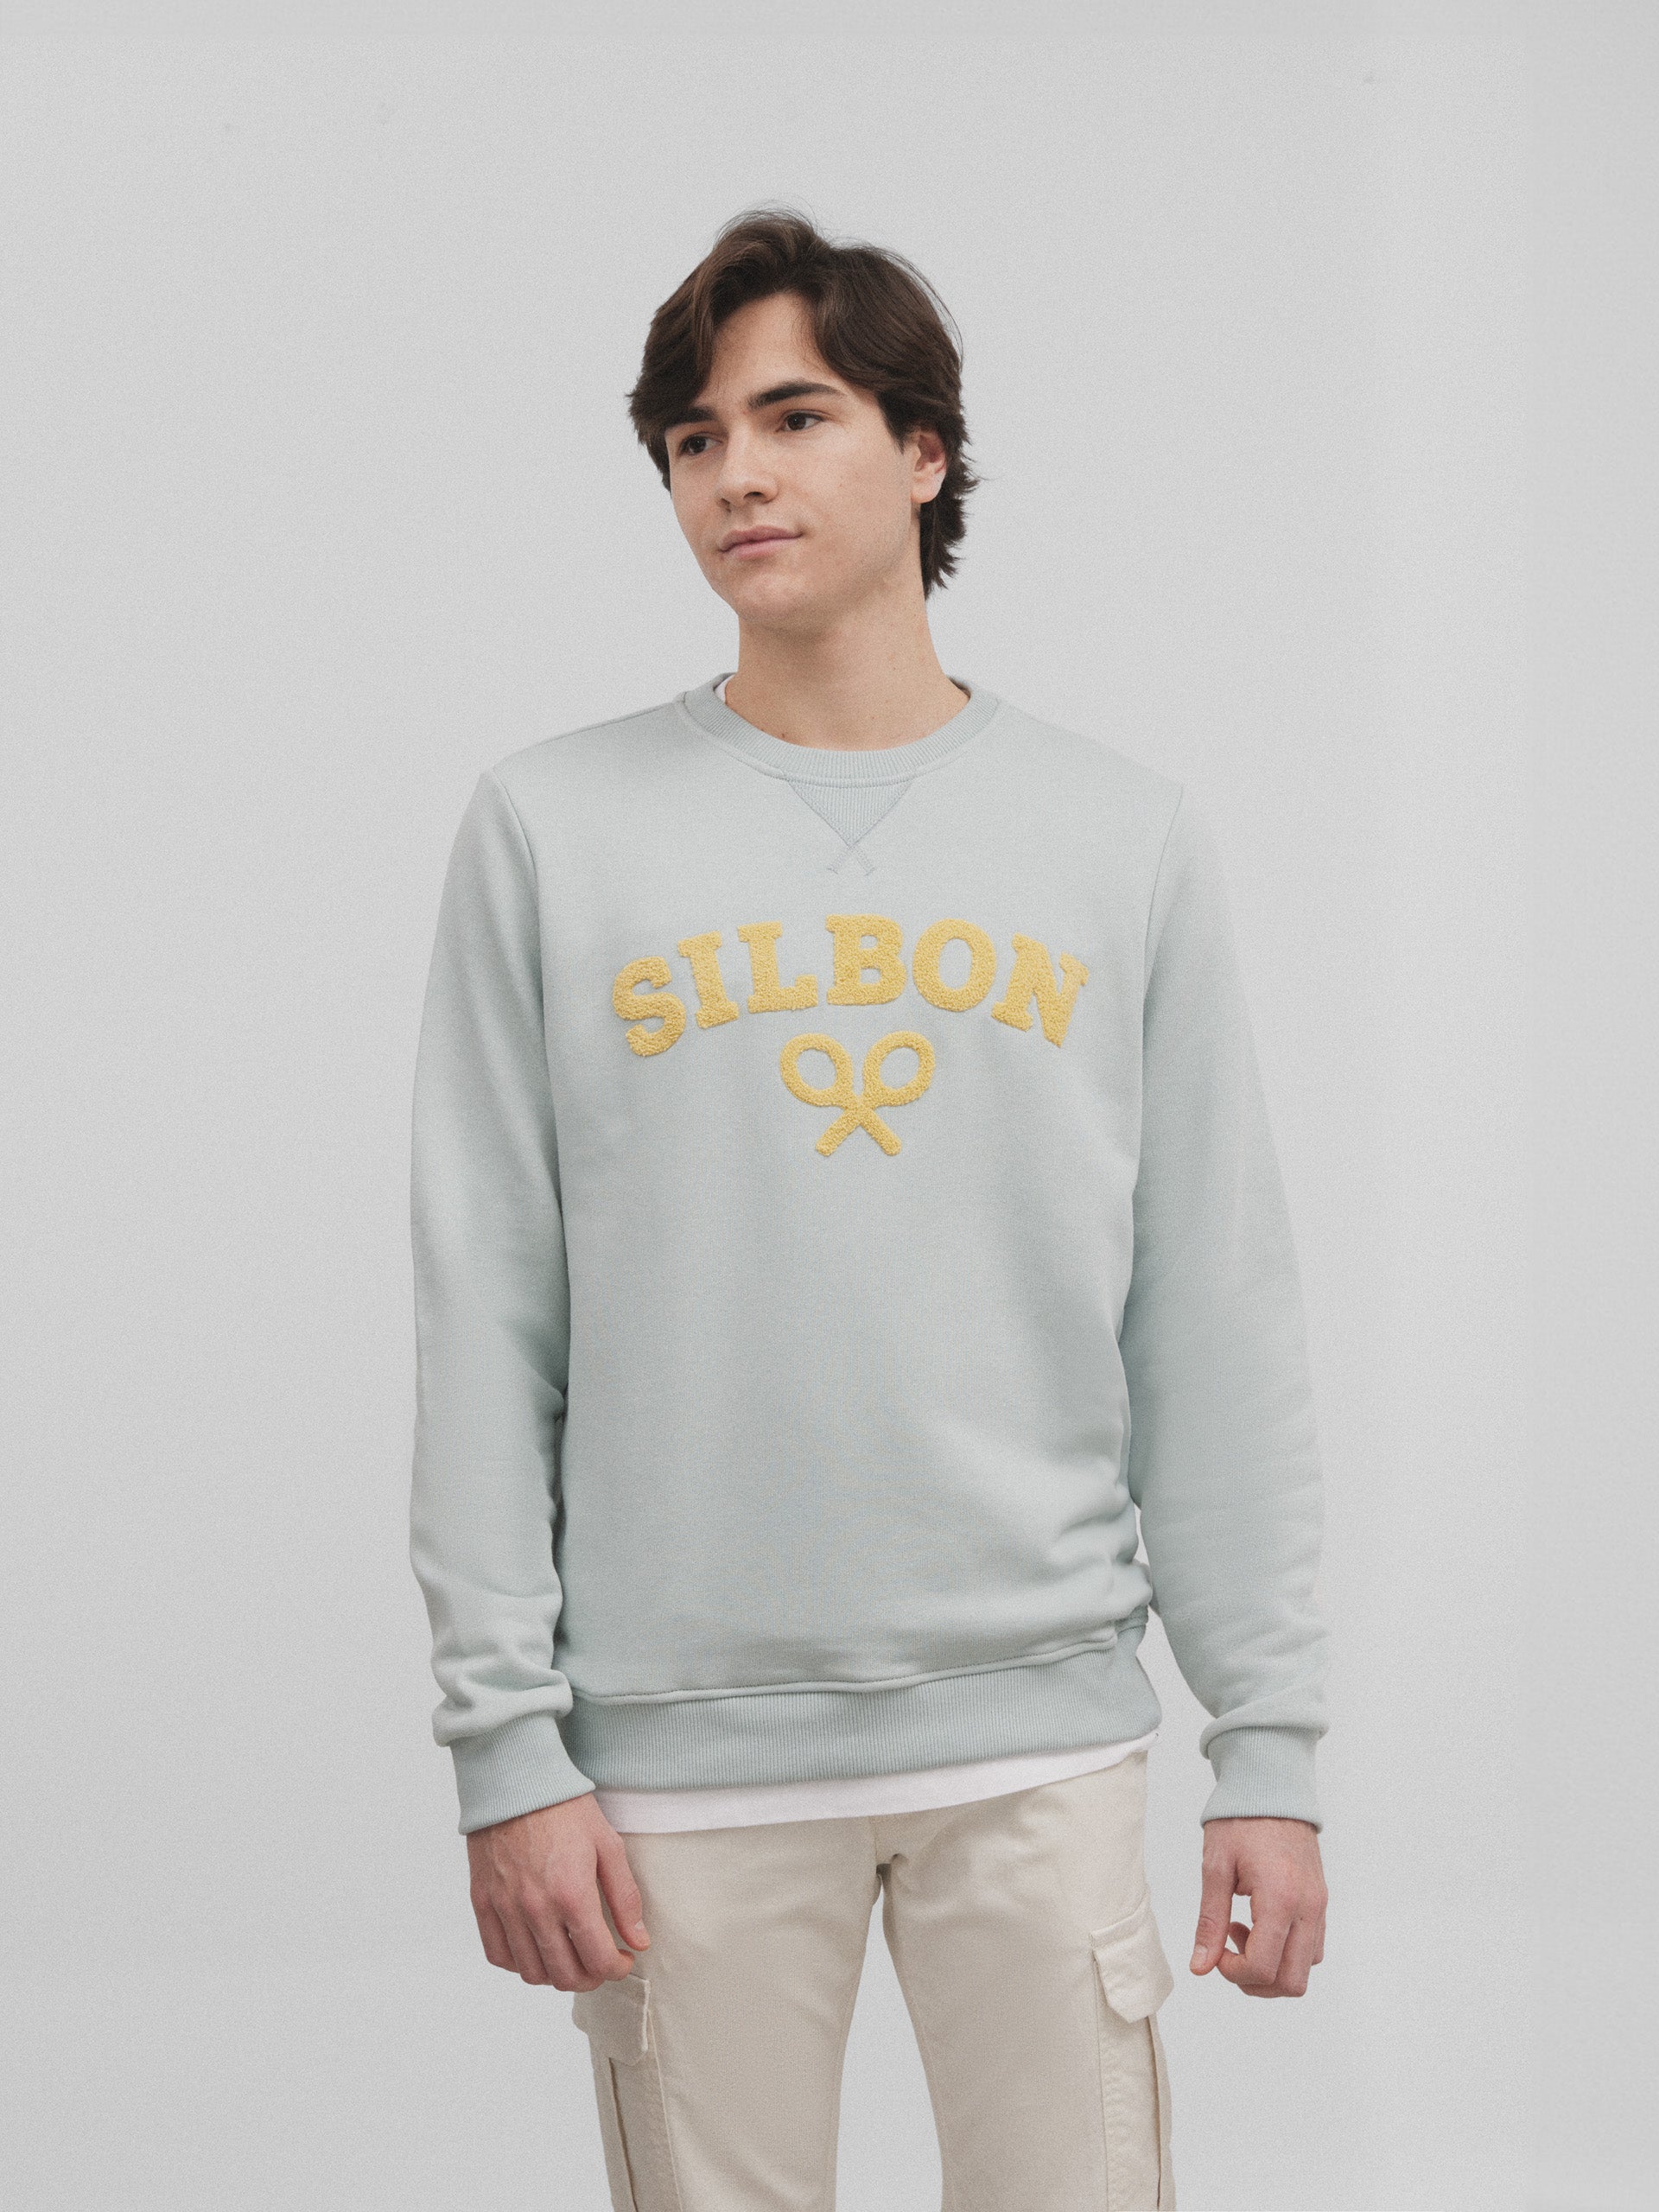 Half aquamarine silbon racket sweatshirt